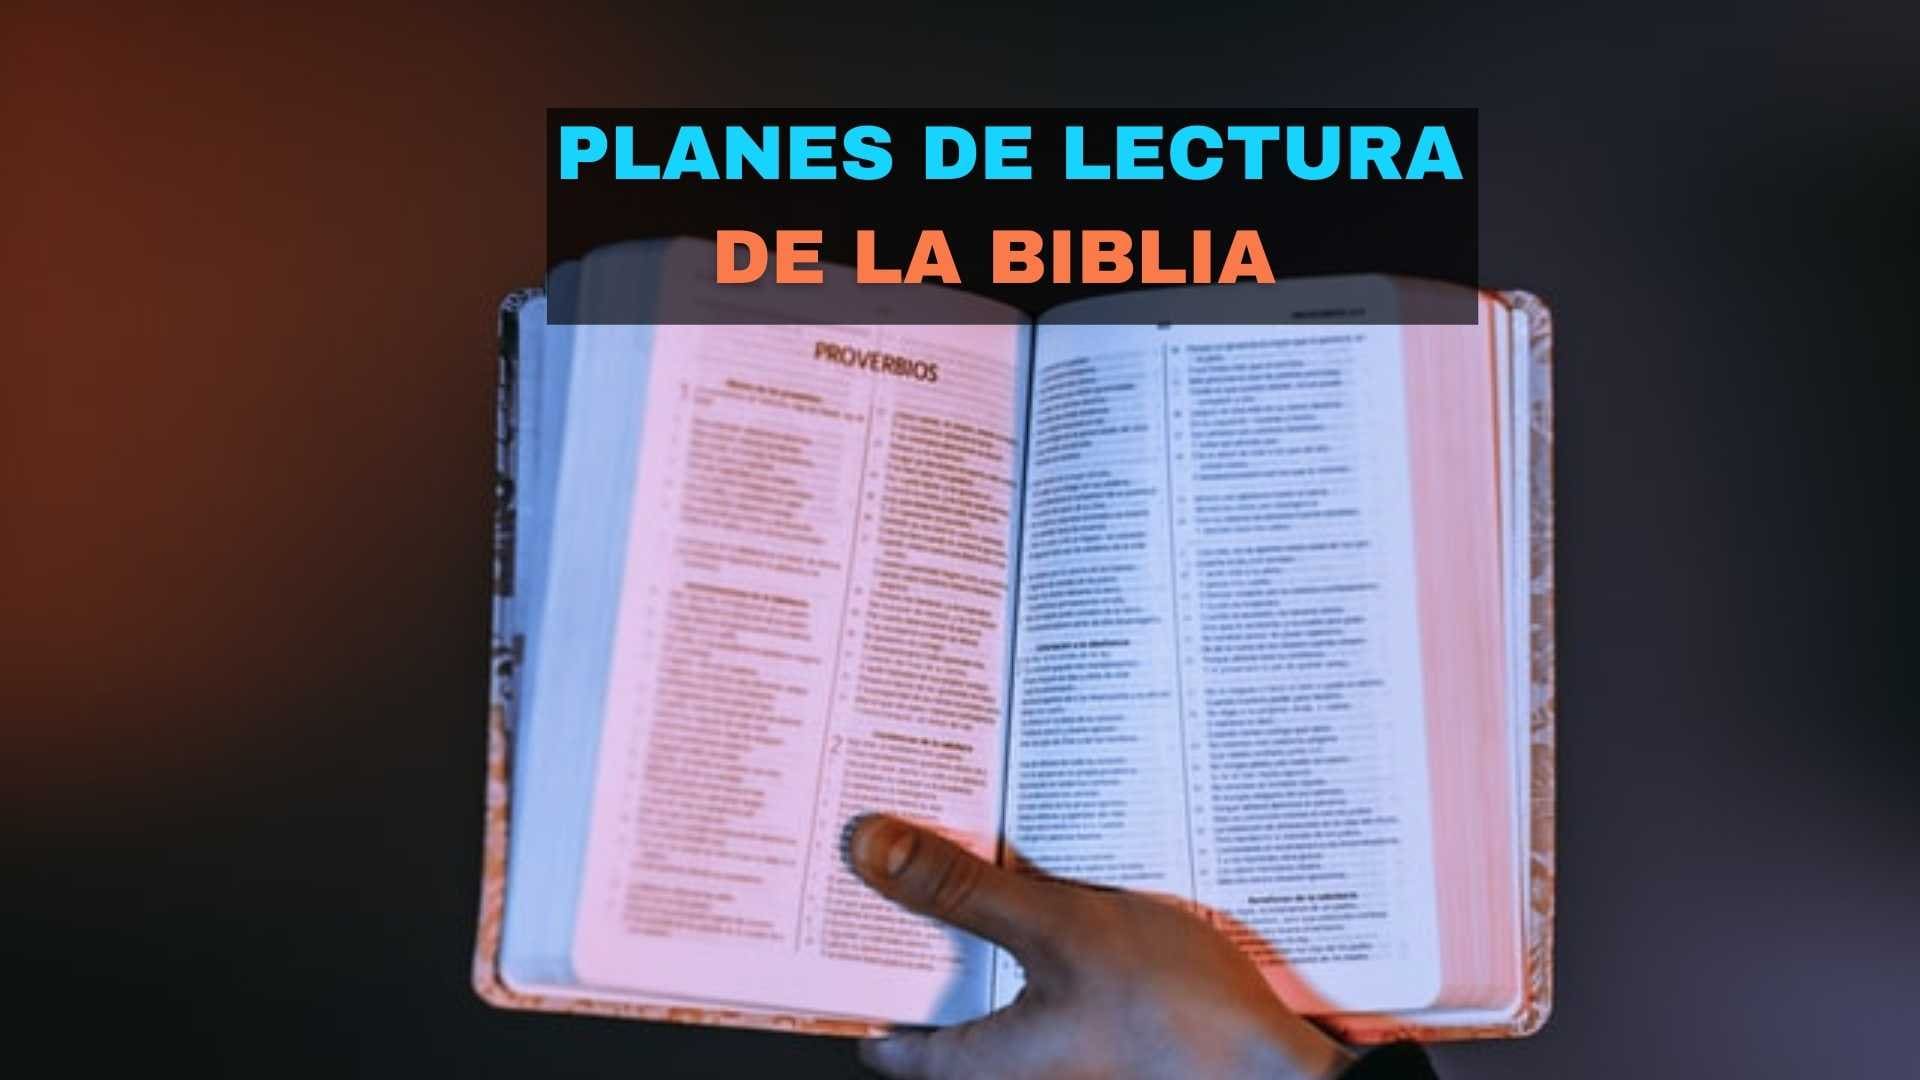 Planes de lectura de la biblia